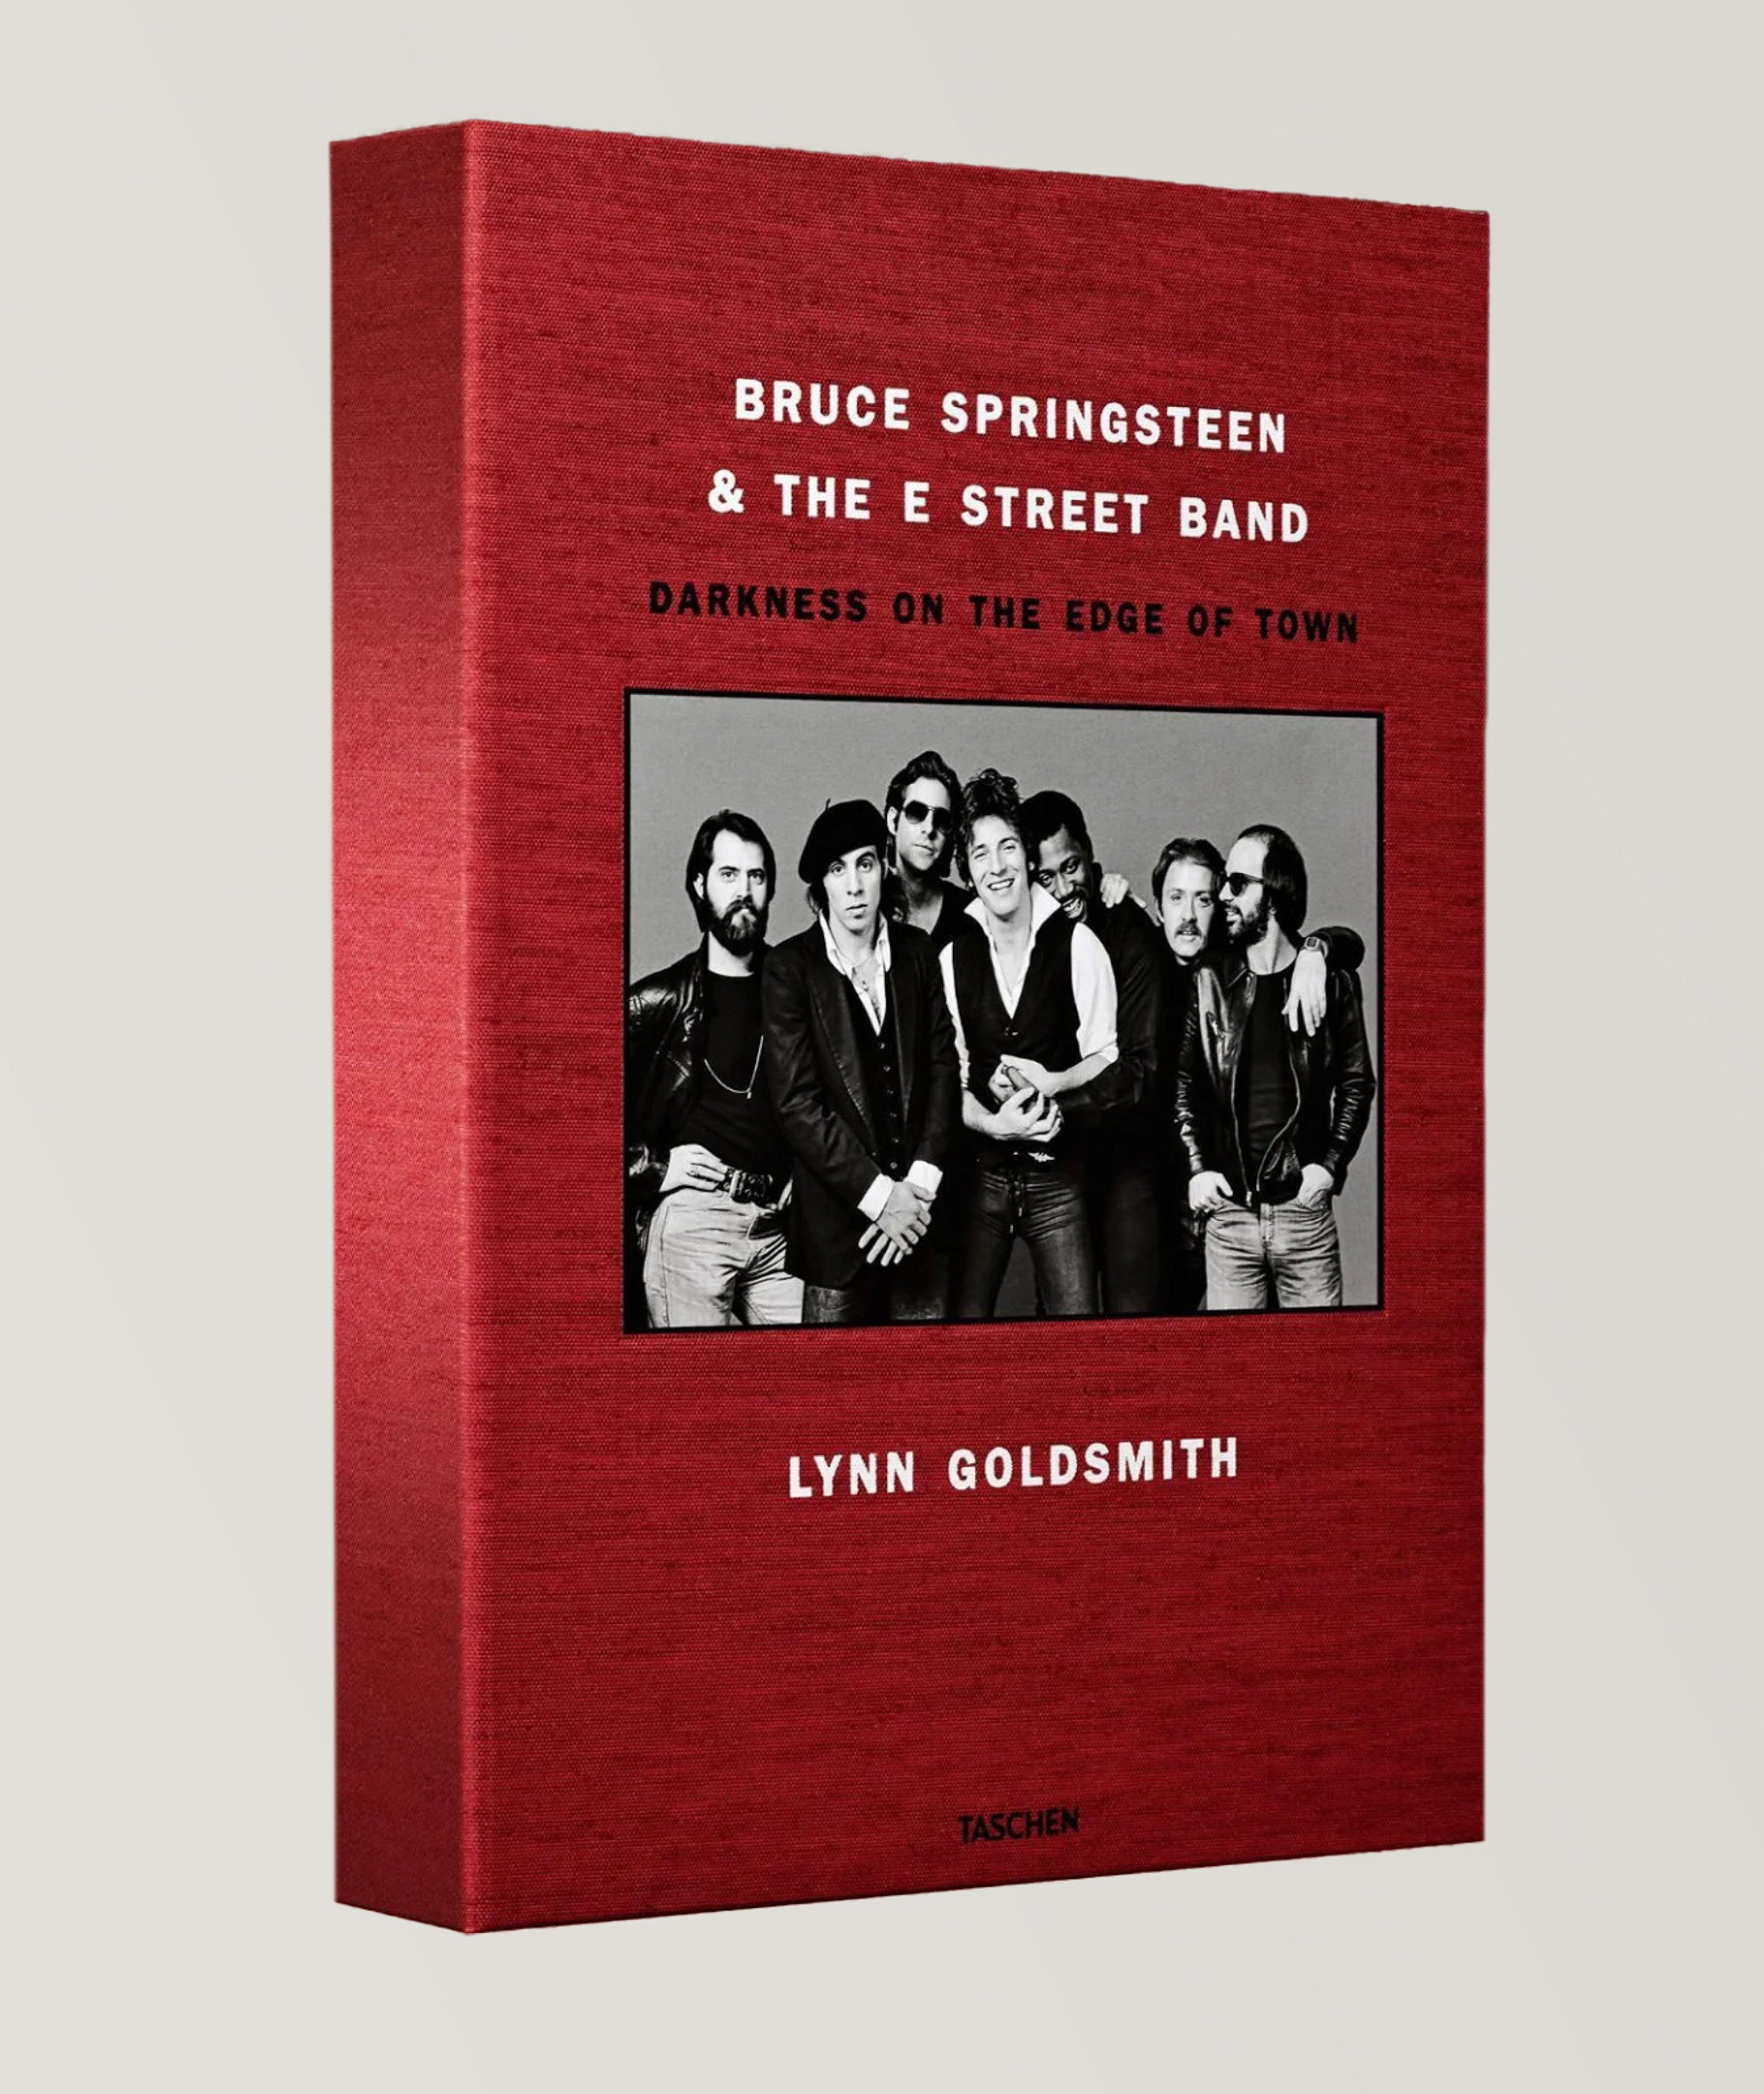 Livre « Bruce Springsteen & The E Street Band » image 0